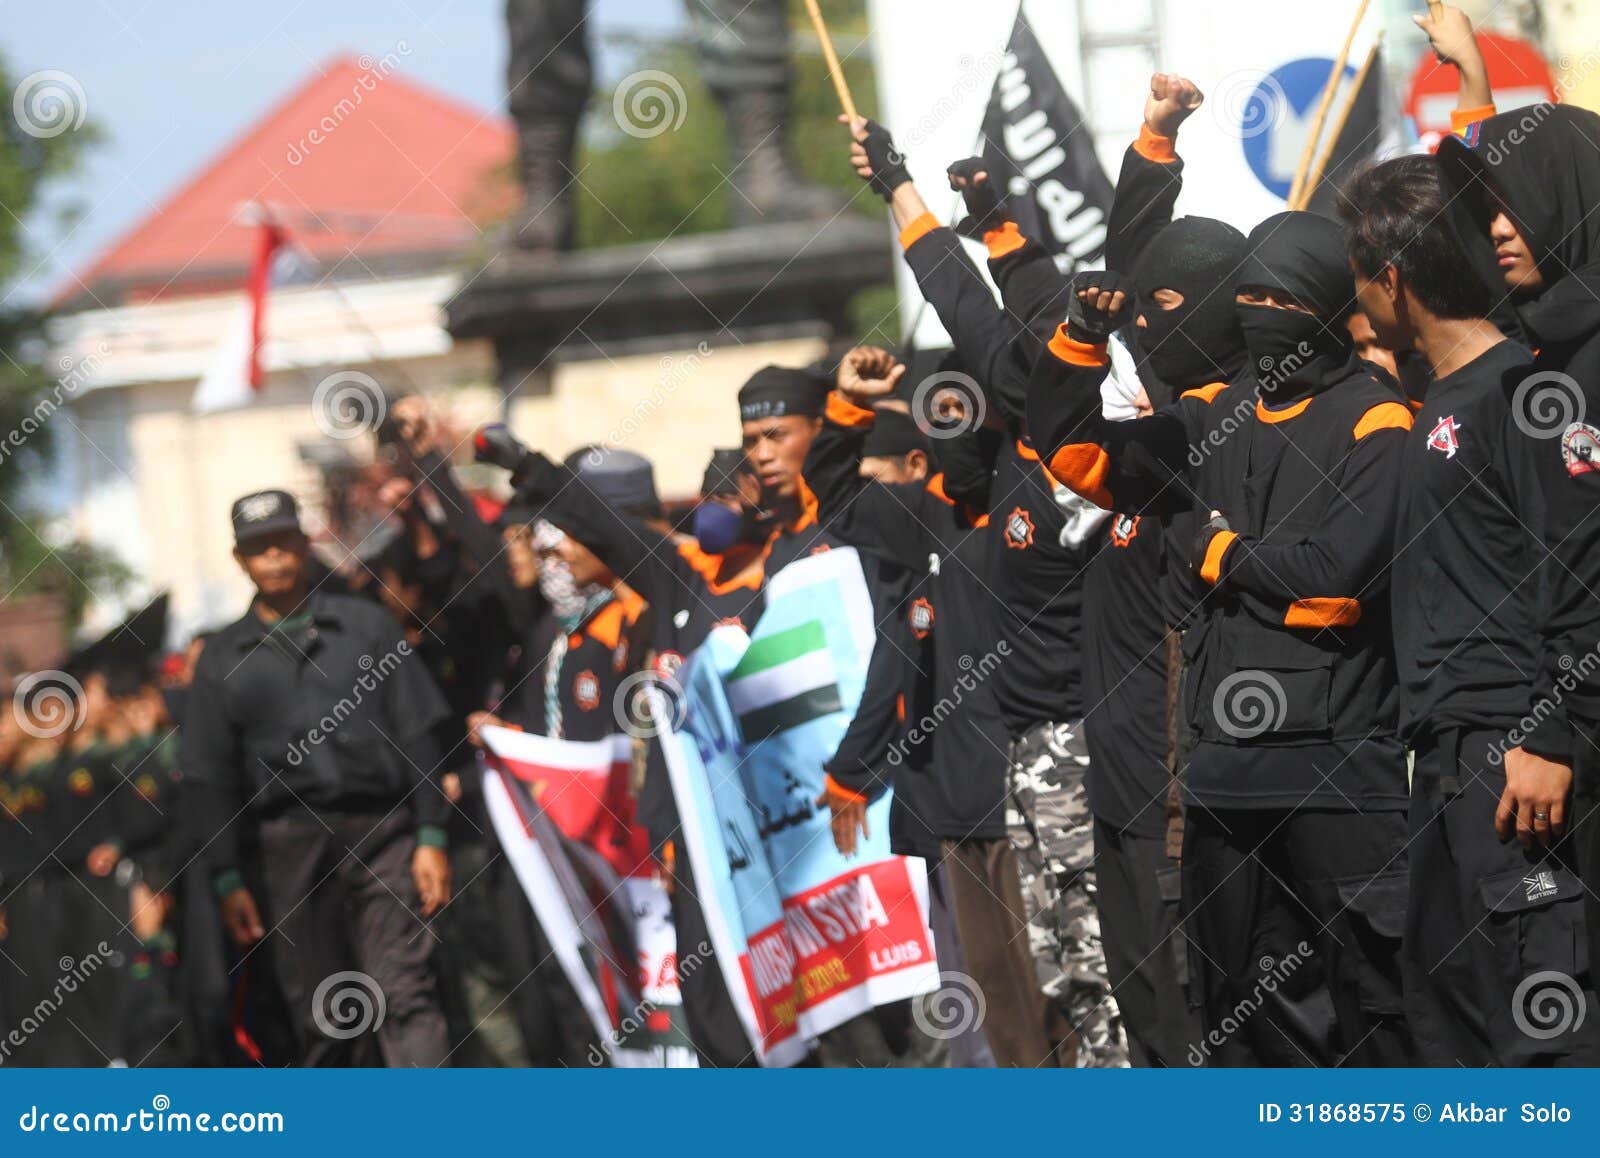 Dimostrazione della Siria. I dimostranti hanno tenuto una dimostrazione per sostenere la Siria dentro sola, Java centrale, Indonesia